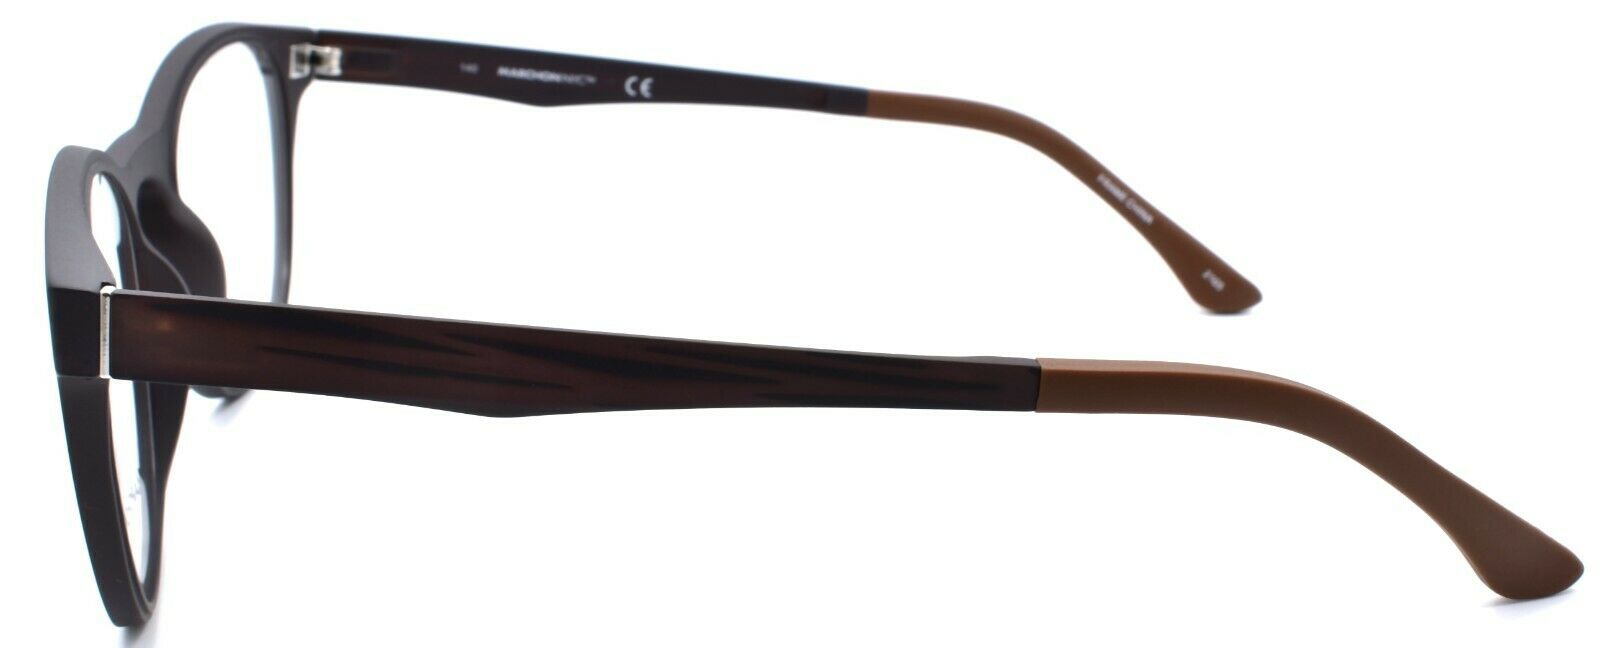 5-Marchon M-1502 210 Eyeglasses Frames 50-19-140 Matte Brown + 2 Magnetic Clip Ons-886895484367-IKSpecs